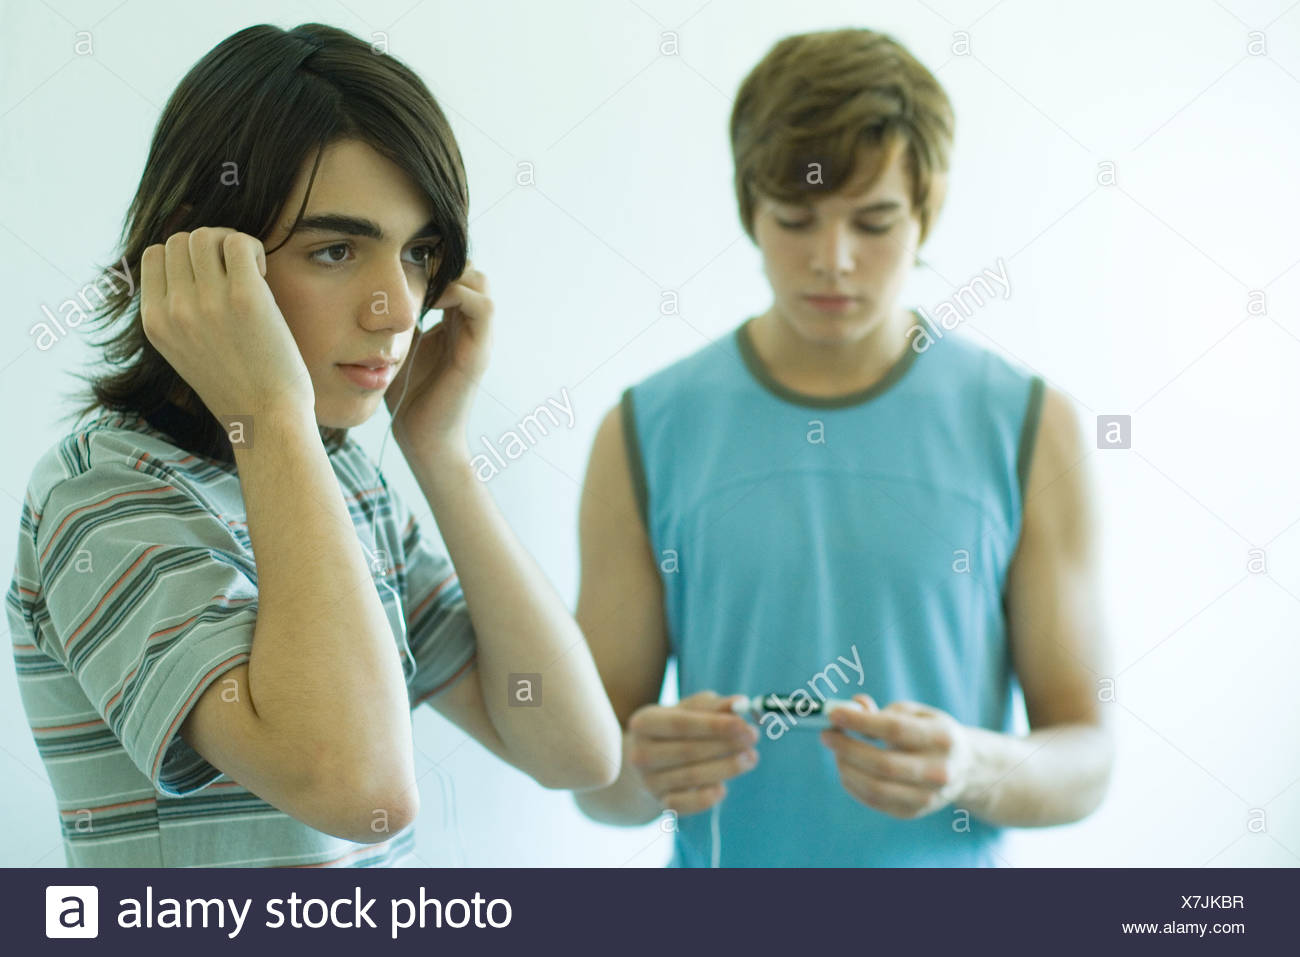 Teen boys in einem raum foto 4